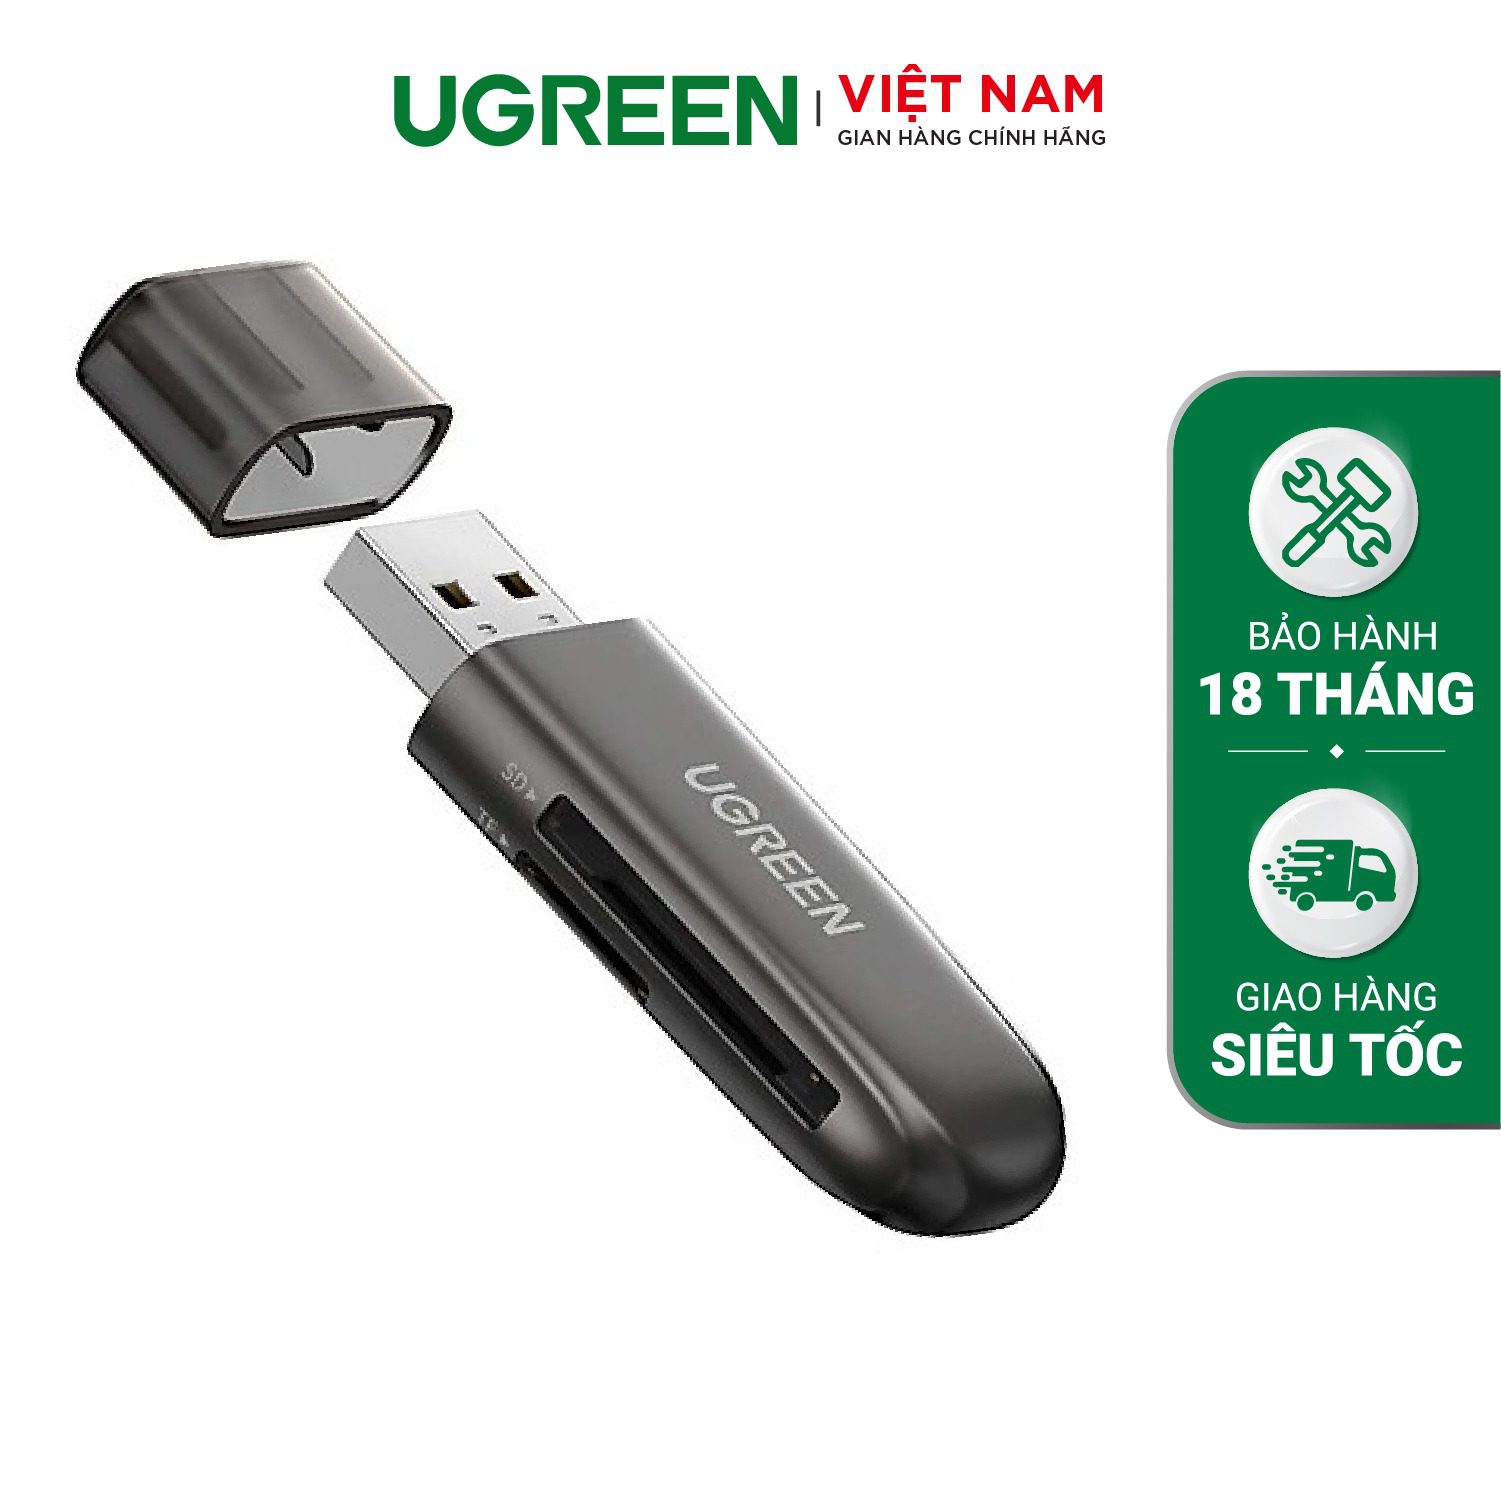 Đầu đọc thẻ Ugreen TF+ SD - Cổng USB 3.0 truyền tải tốc độ cao 5Gbps – Ugreen Việt Nam